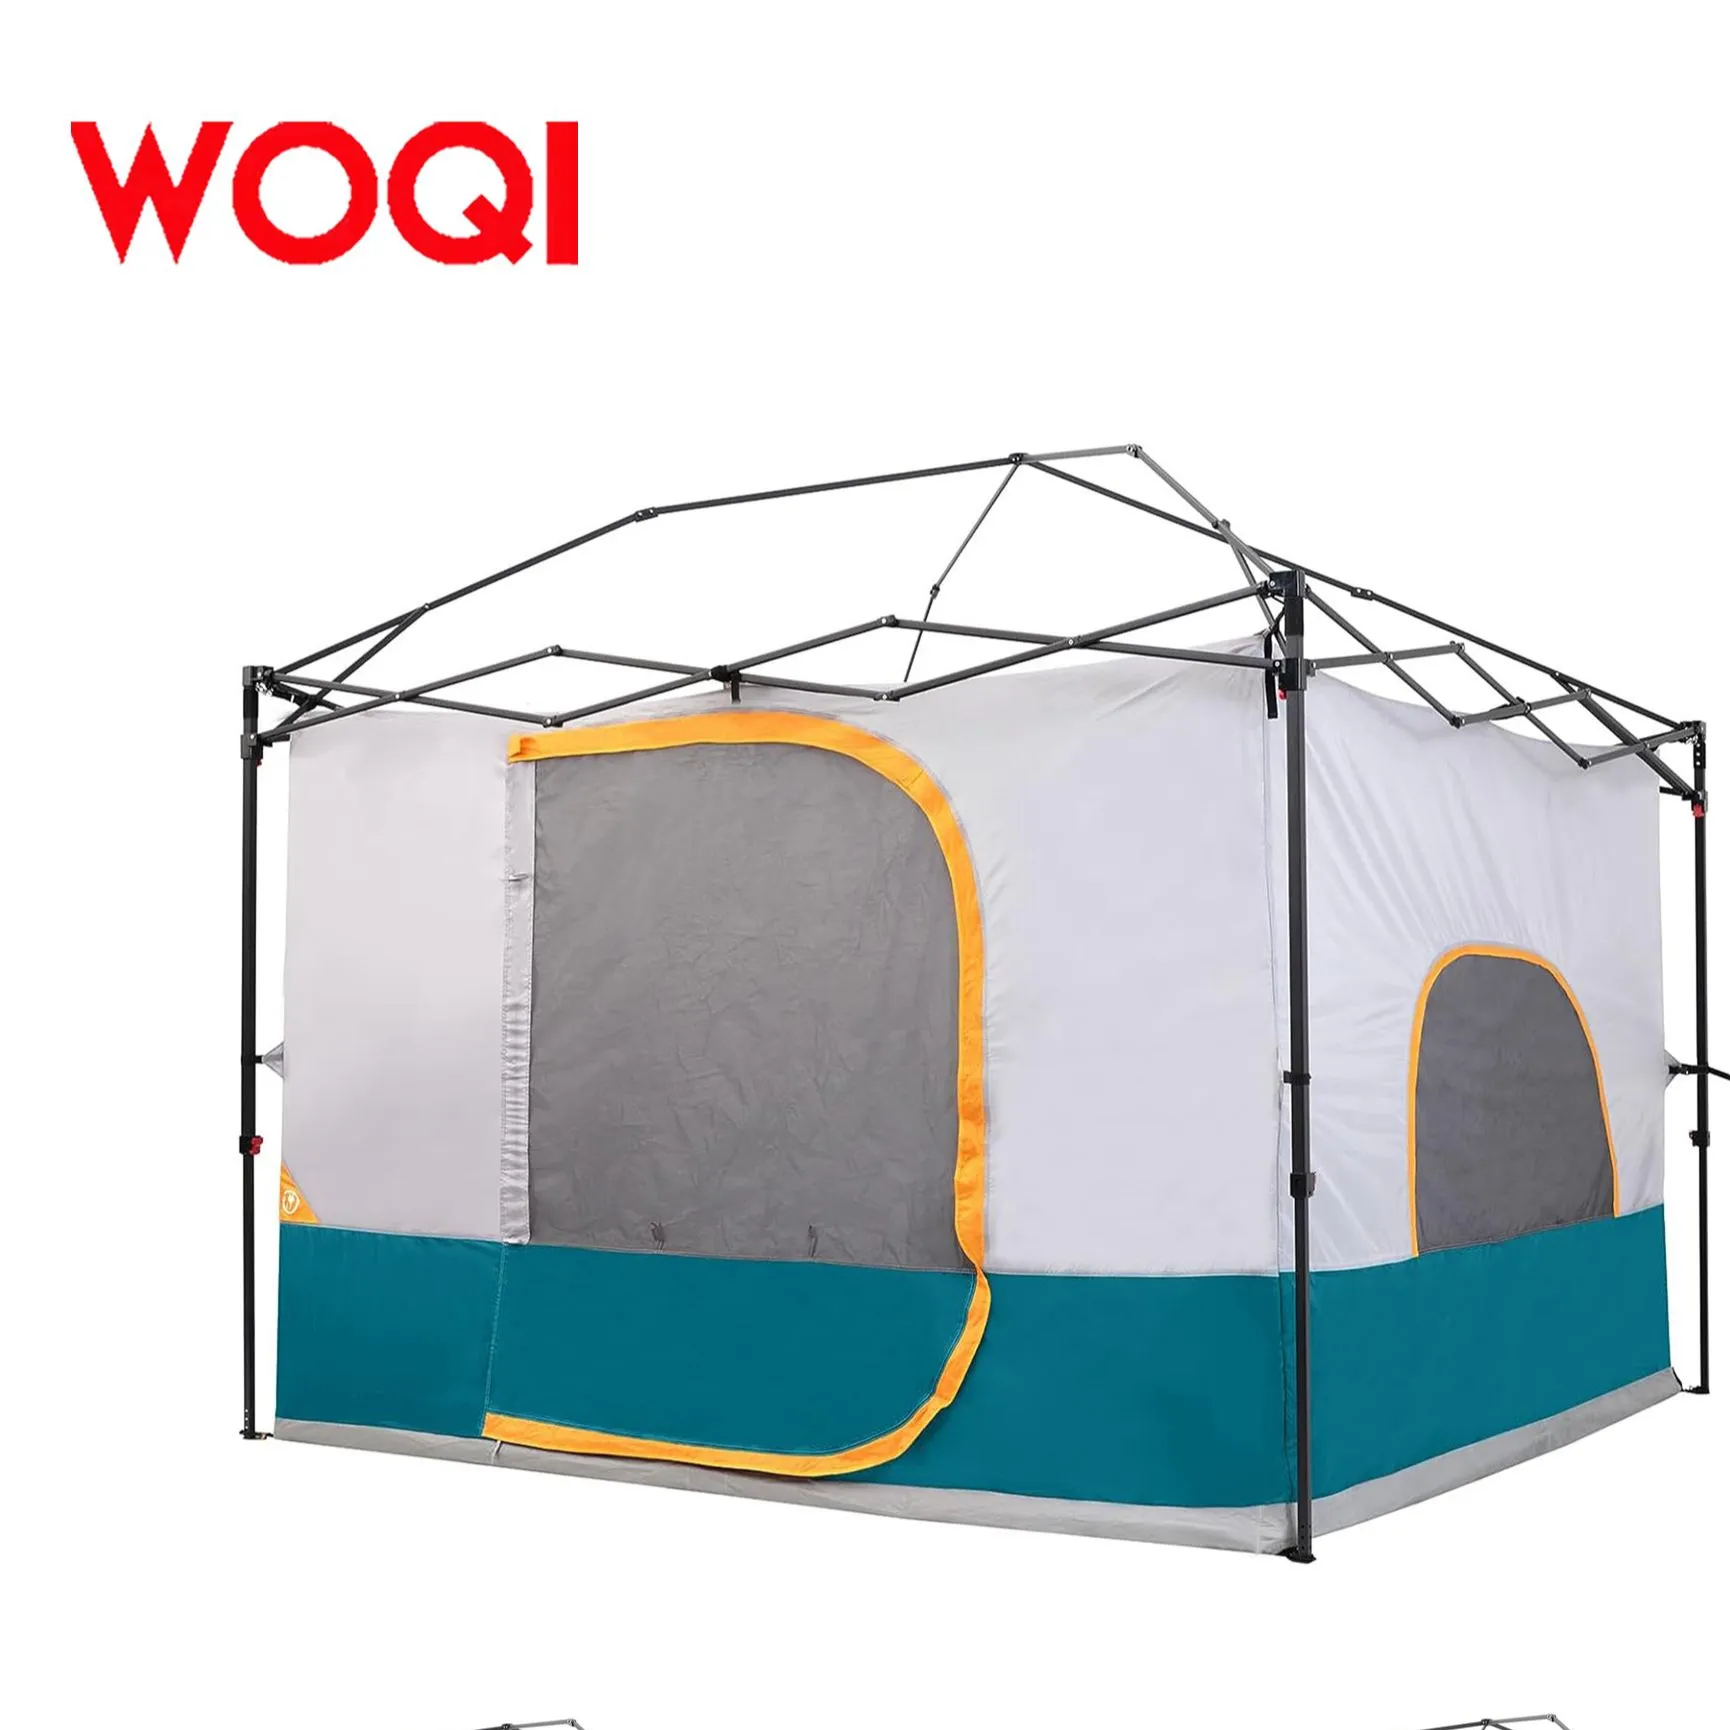 خيمة منبثقة من WOQI مضممة بسقف يسمح بتهوية كاملة خيمة مضممة مغلقة بسيطة